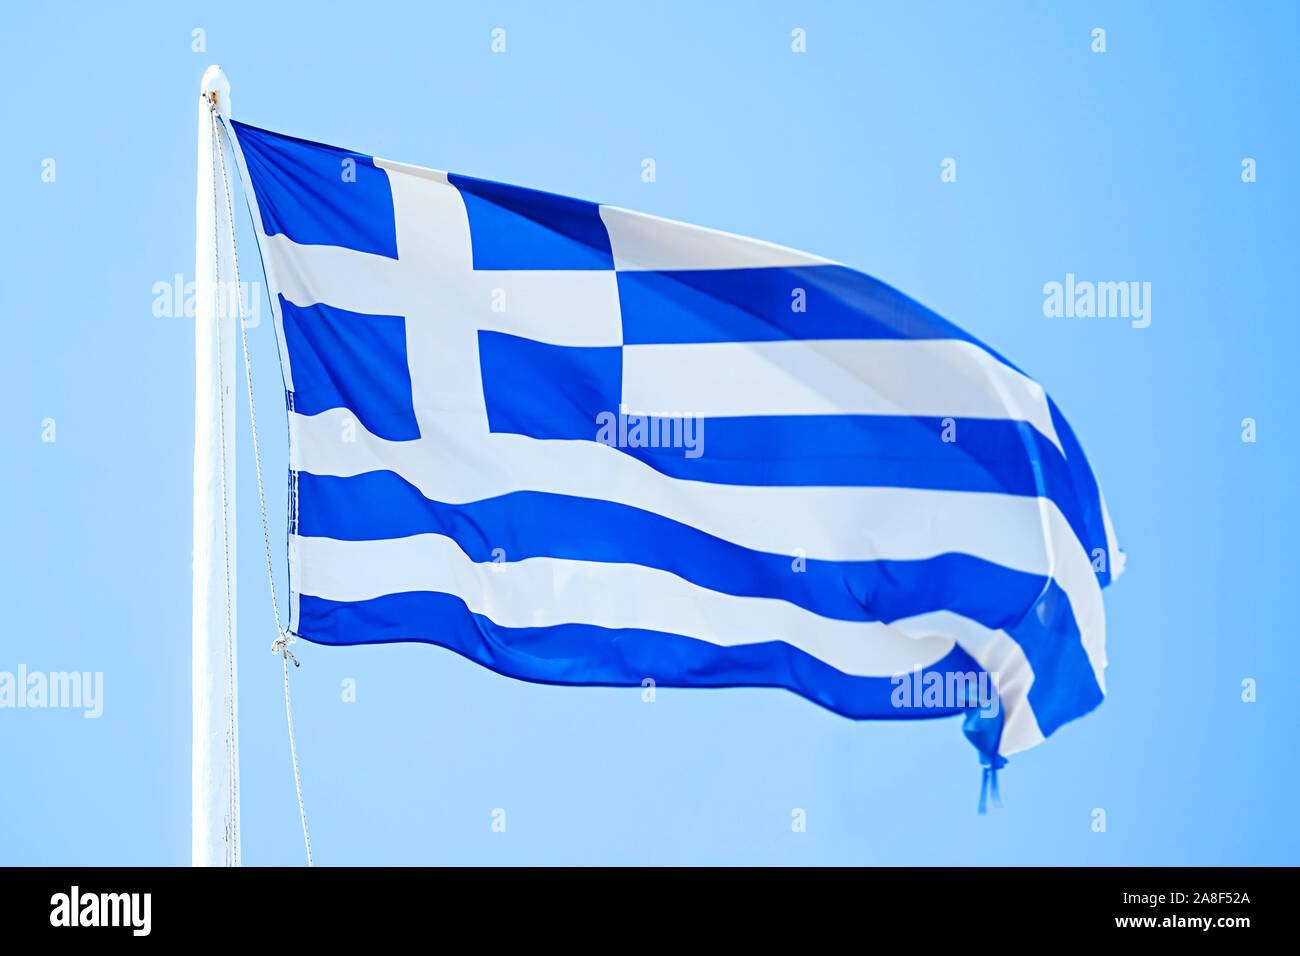 Eine griechische Flagge unter blauem Himmel, Griechische Fahne, Flaggenmast, Fahnenmast, blauer Himmel, Stock Photo